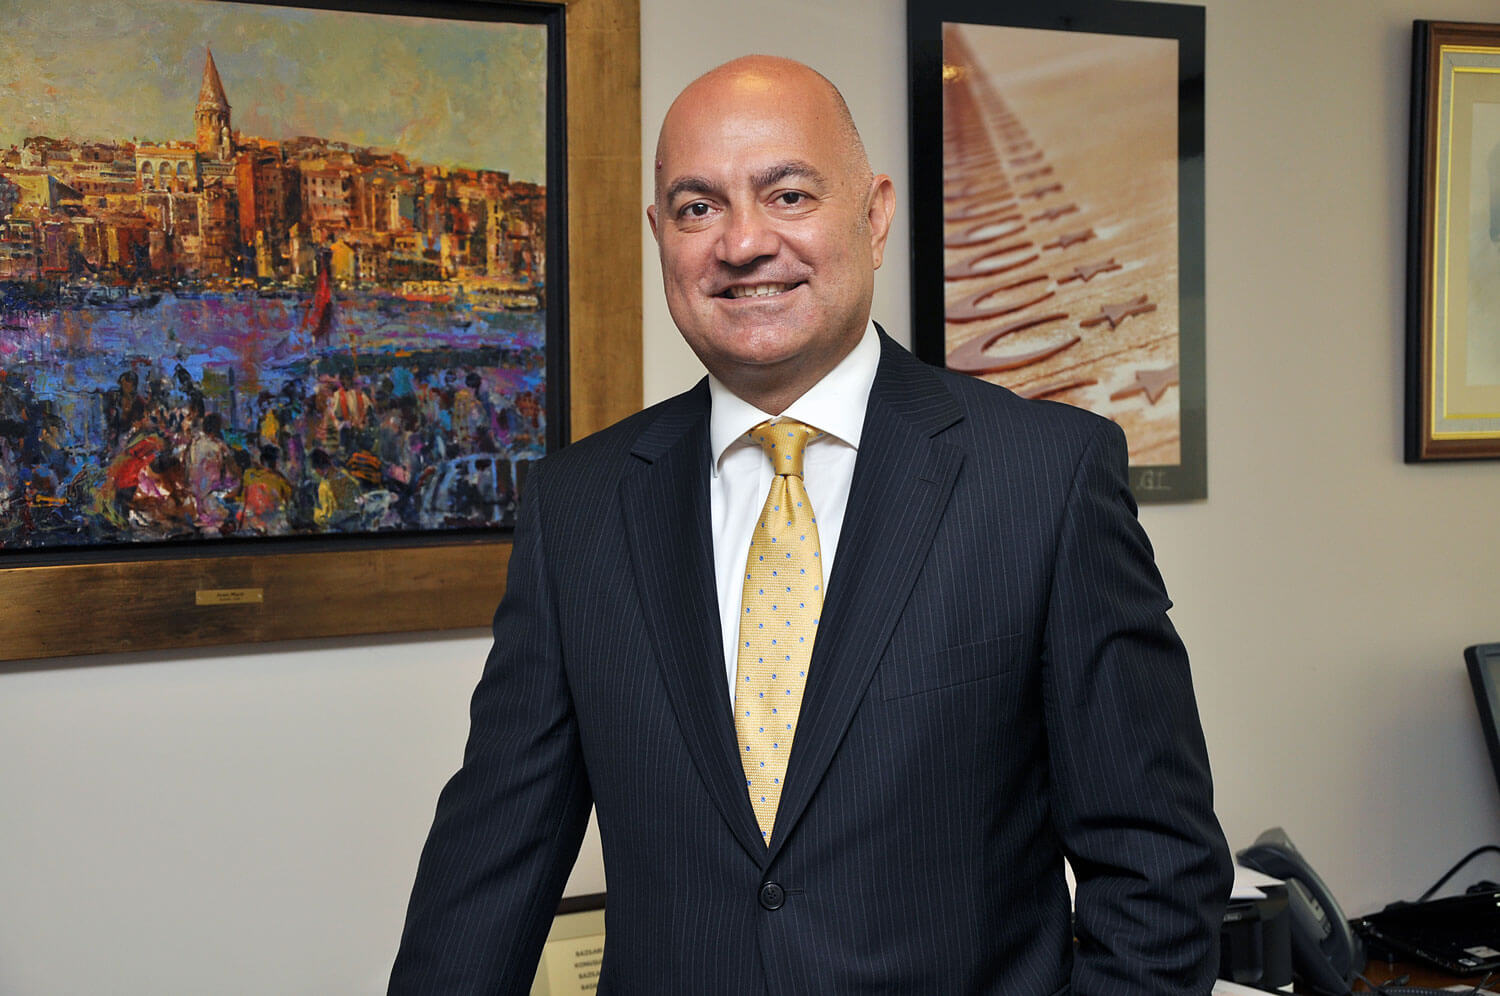 Cagatay Ozdogru, CEO of ESAS